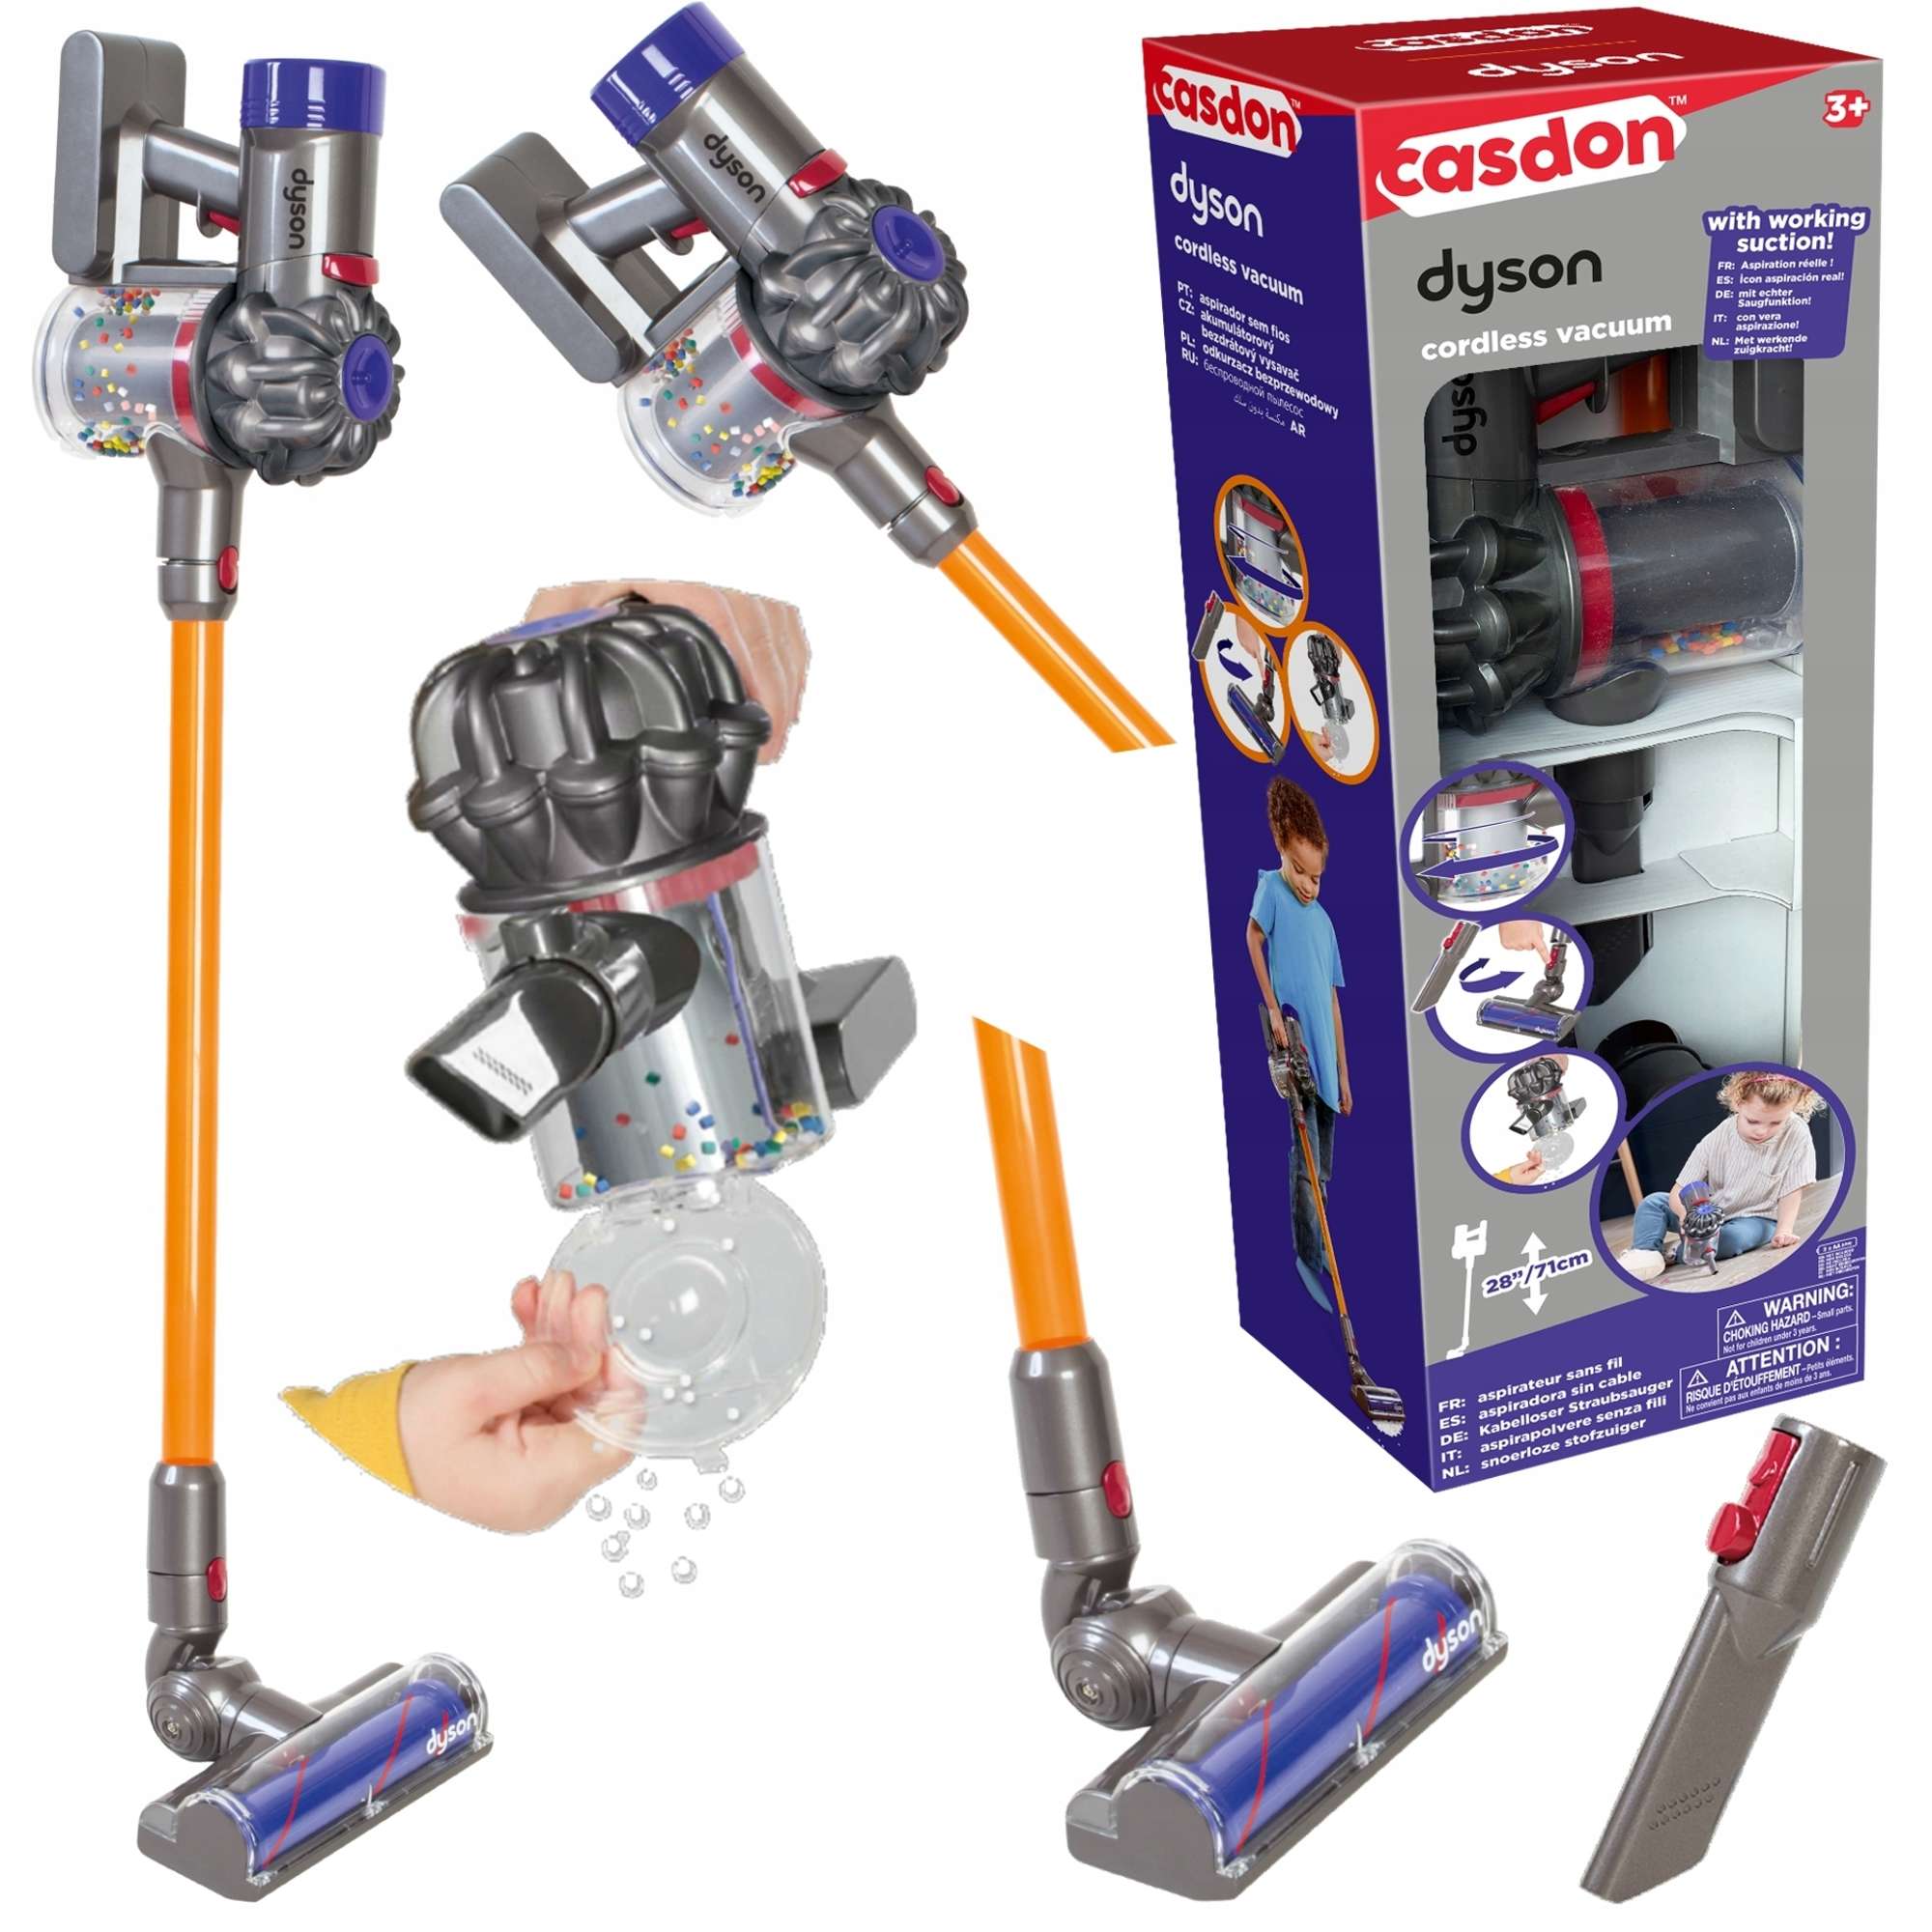 Kinder Dyson Cordless interaktive Staubsaug Spielzeug Upright für Casdon Vakuum